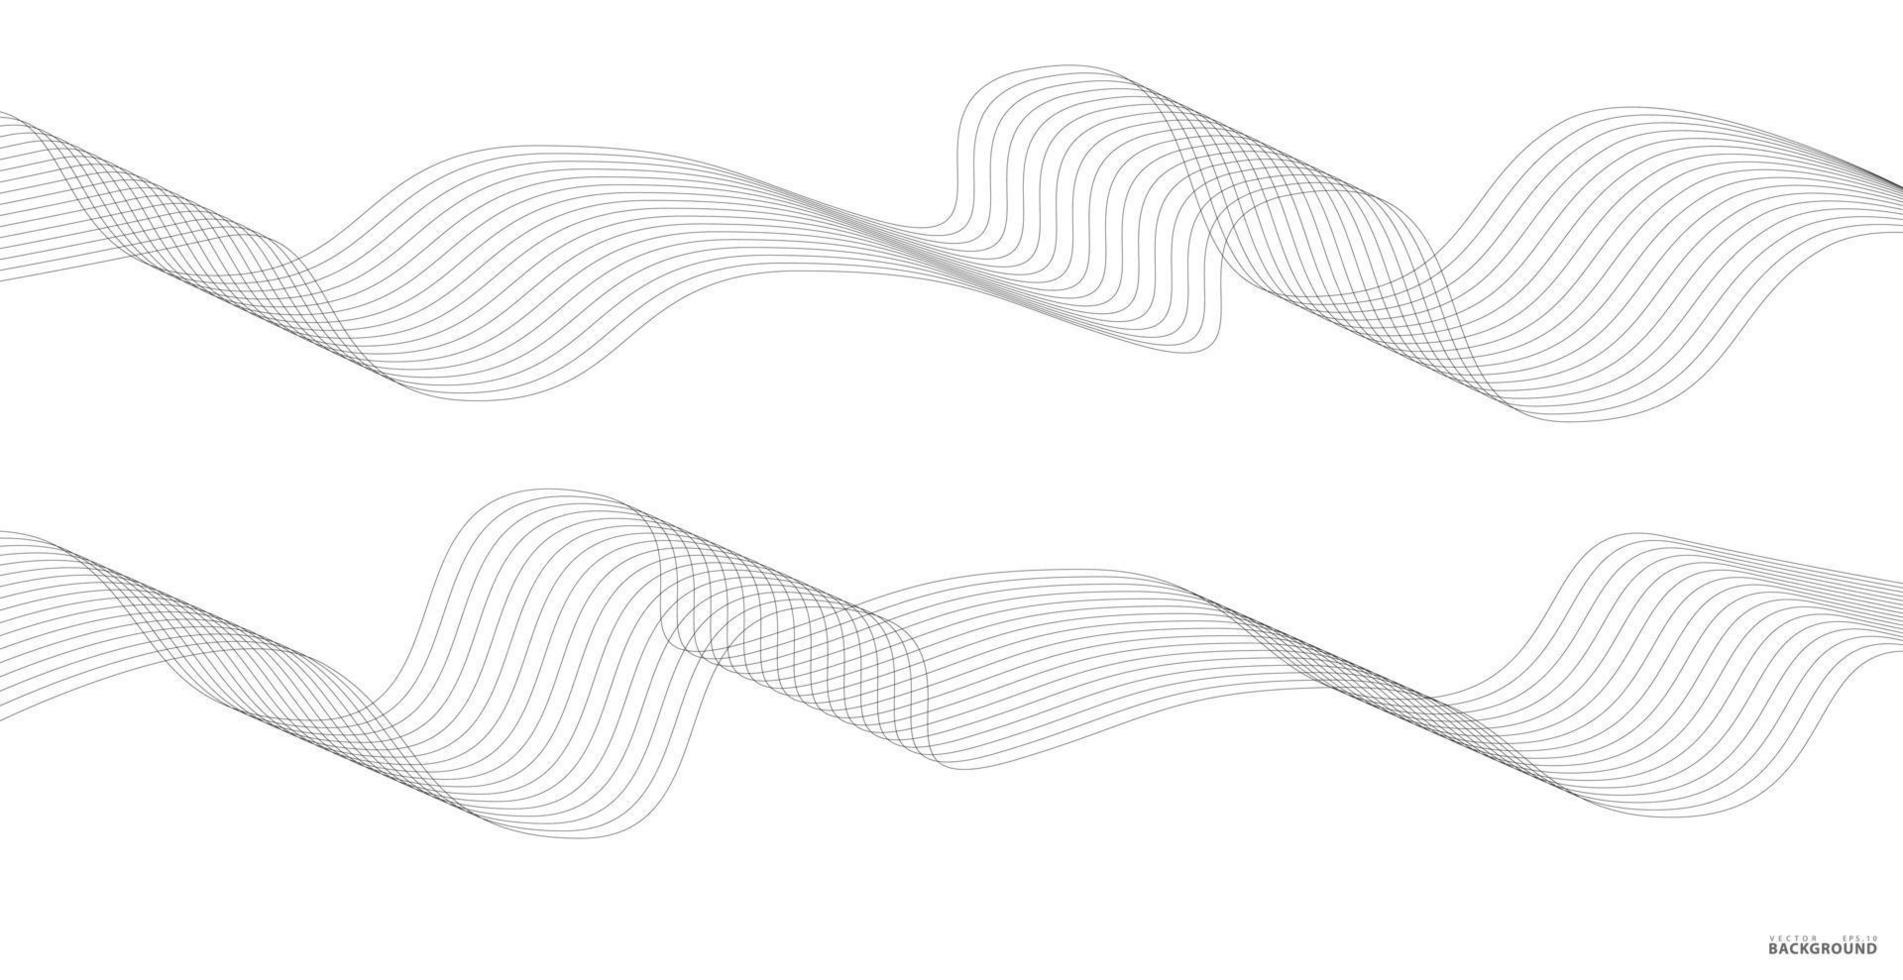 listras onduladas abstratas em um fundo branco isolado. arte de linha de onda, design liso curvo. ilustração em vetor eps 10.